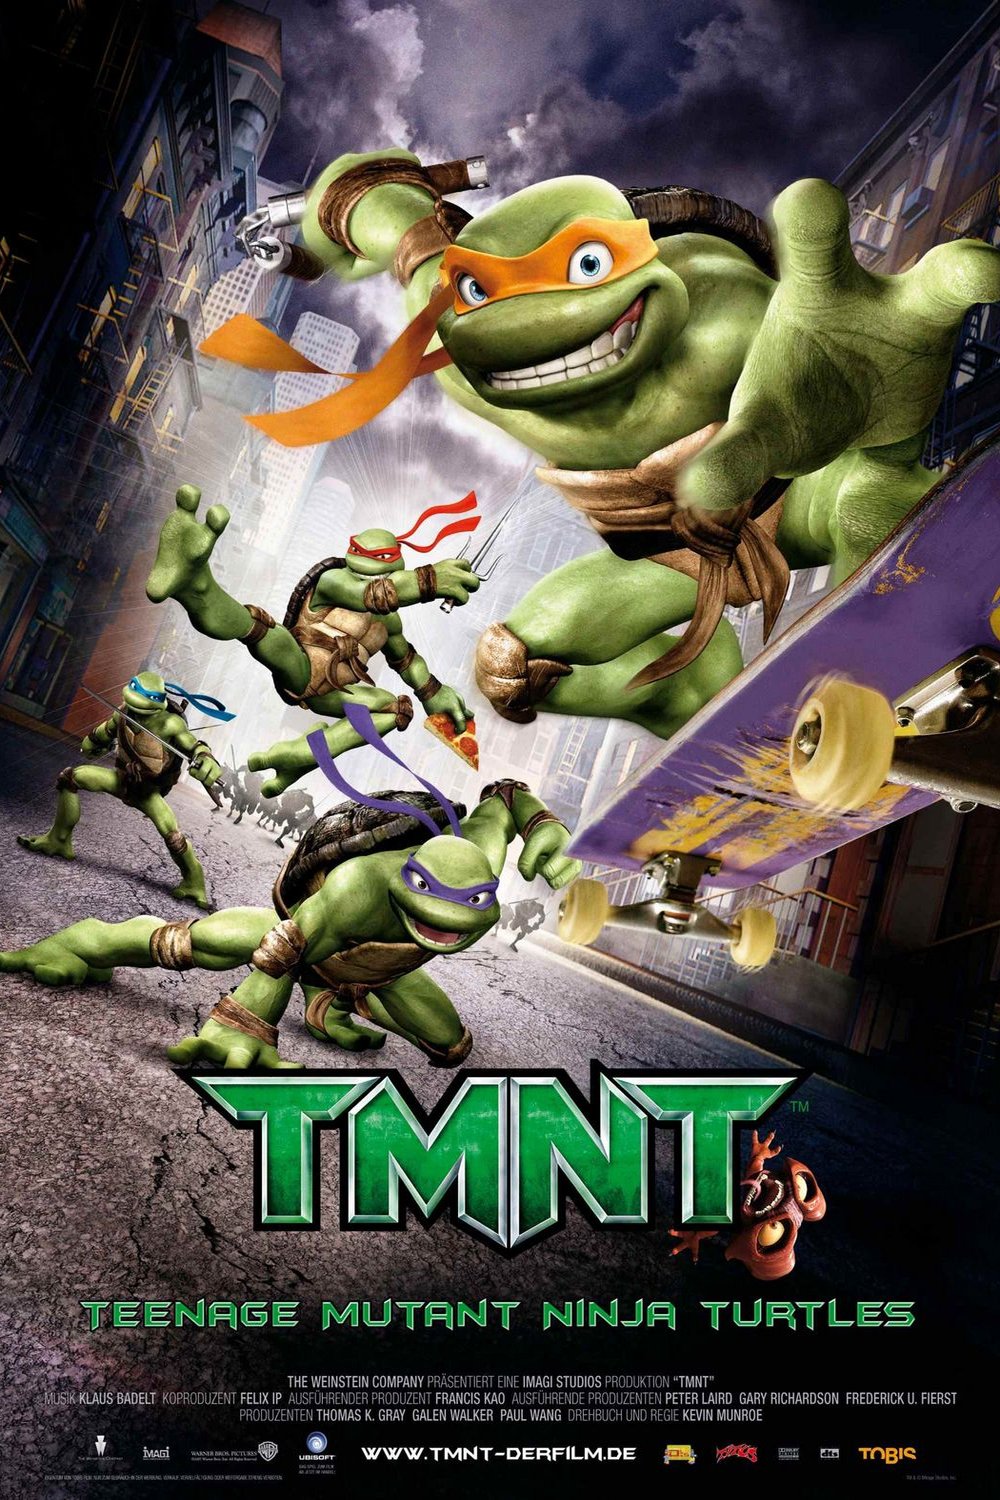 Poster of the movie Teenage Mutant Ninja Turtles